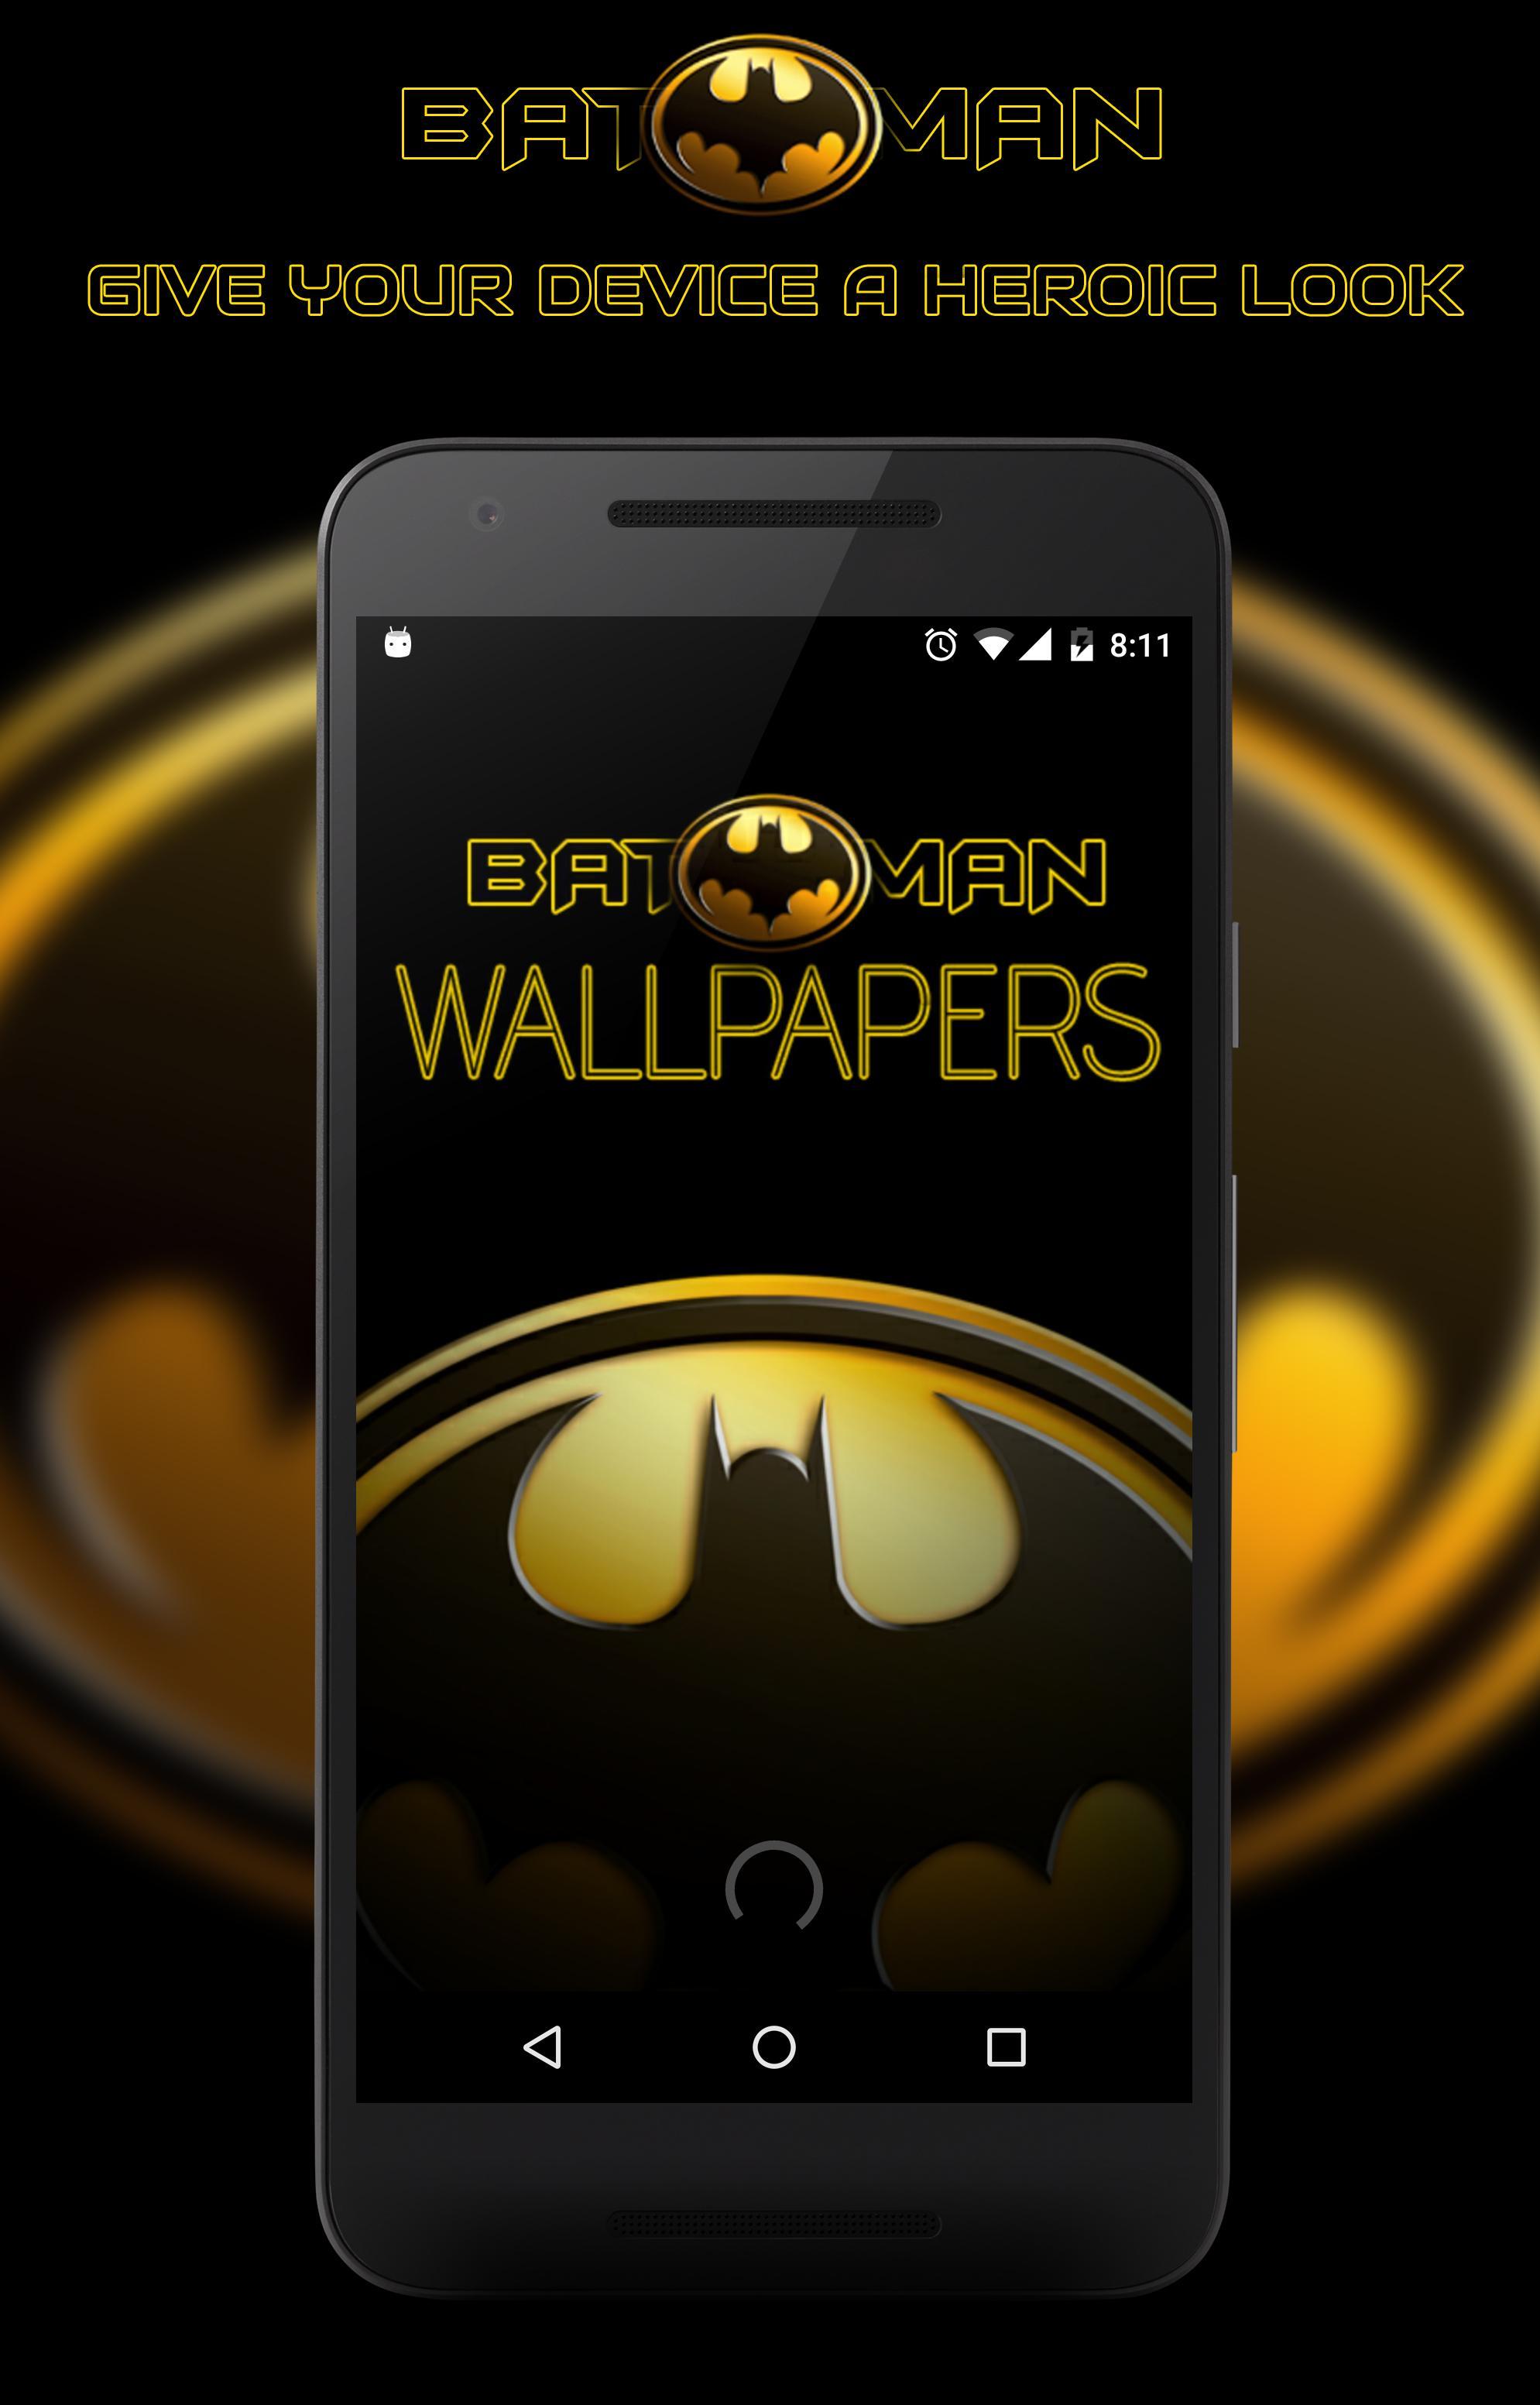 Fondos De Pantalla Batman For Android Apk Download